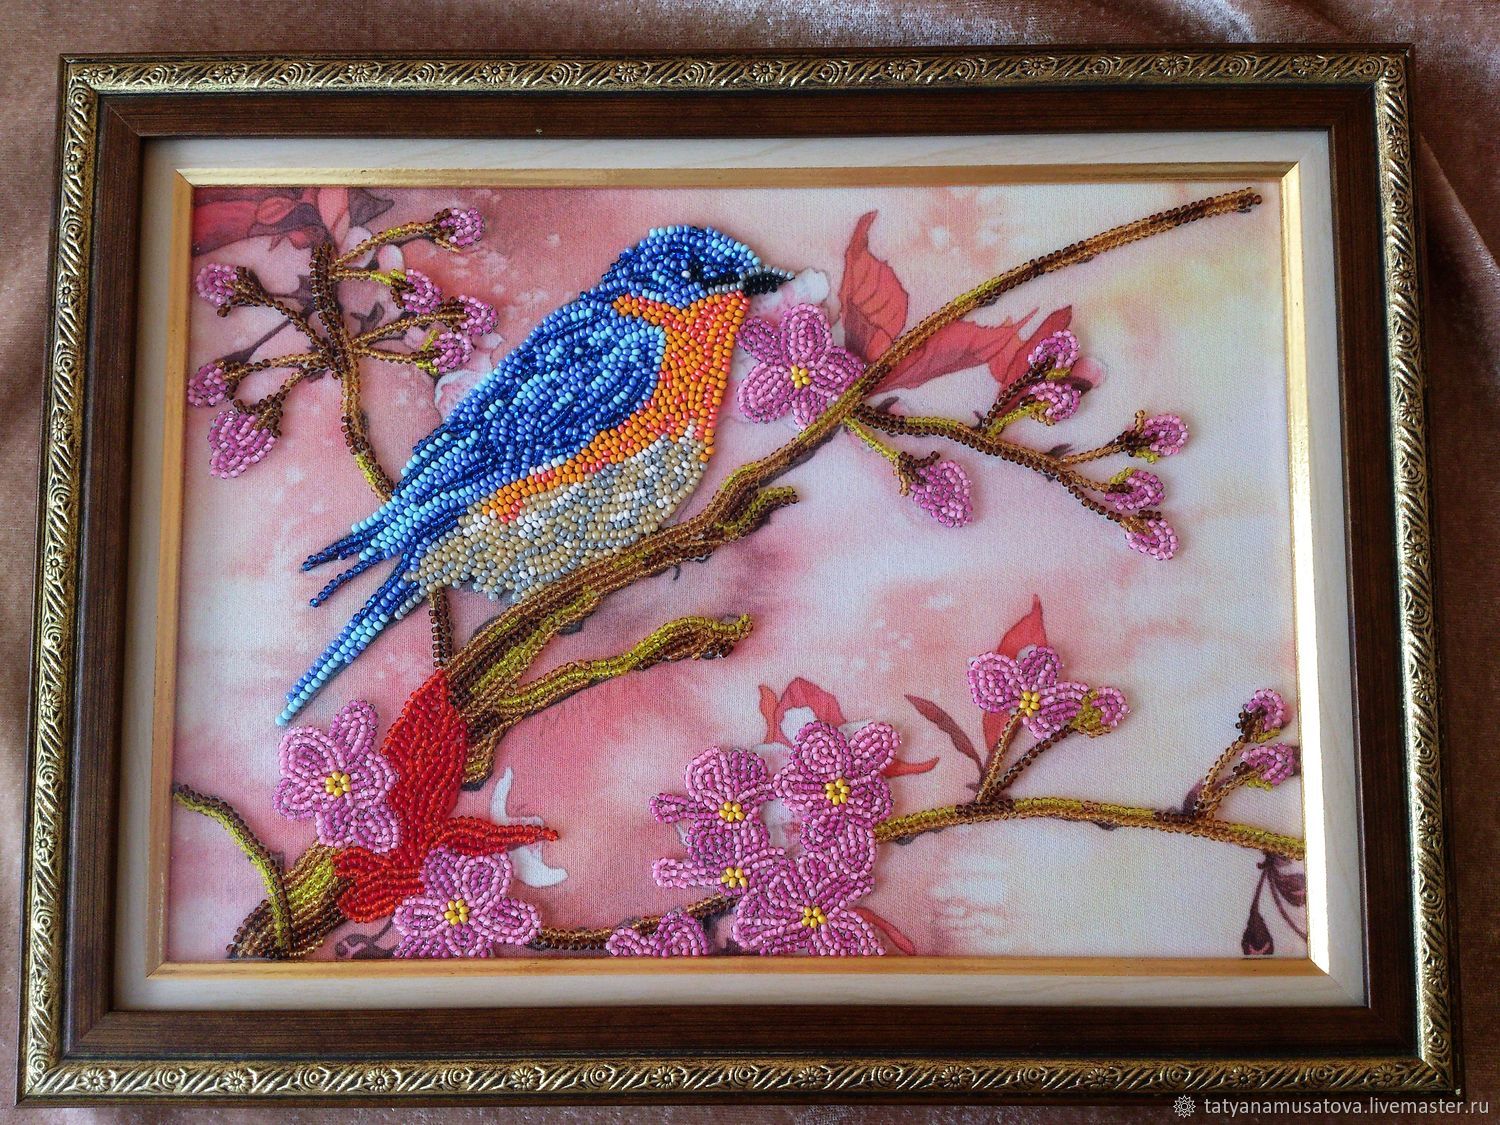  Картина бисером: Синяя птица на цветущей ветке, Картины, Пенза,  Фото №1